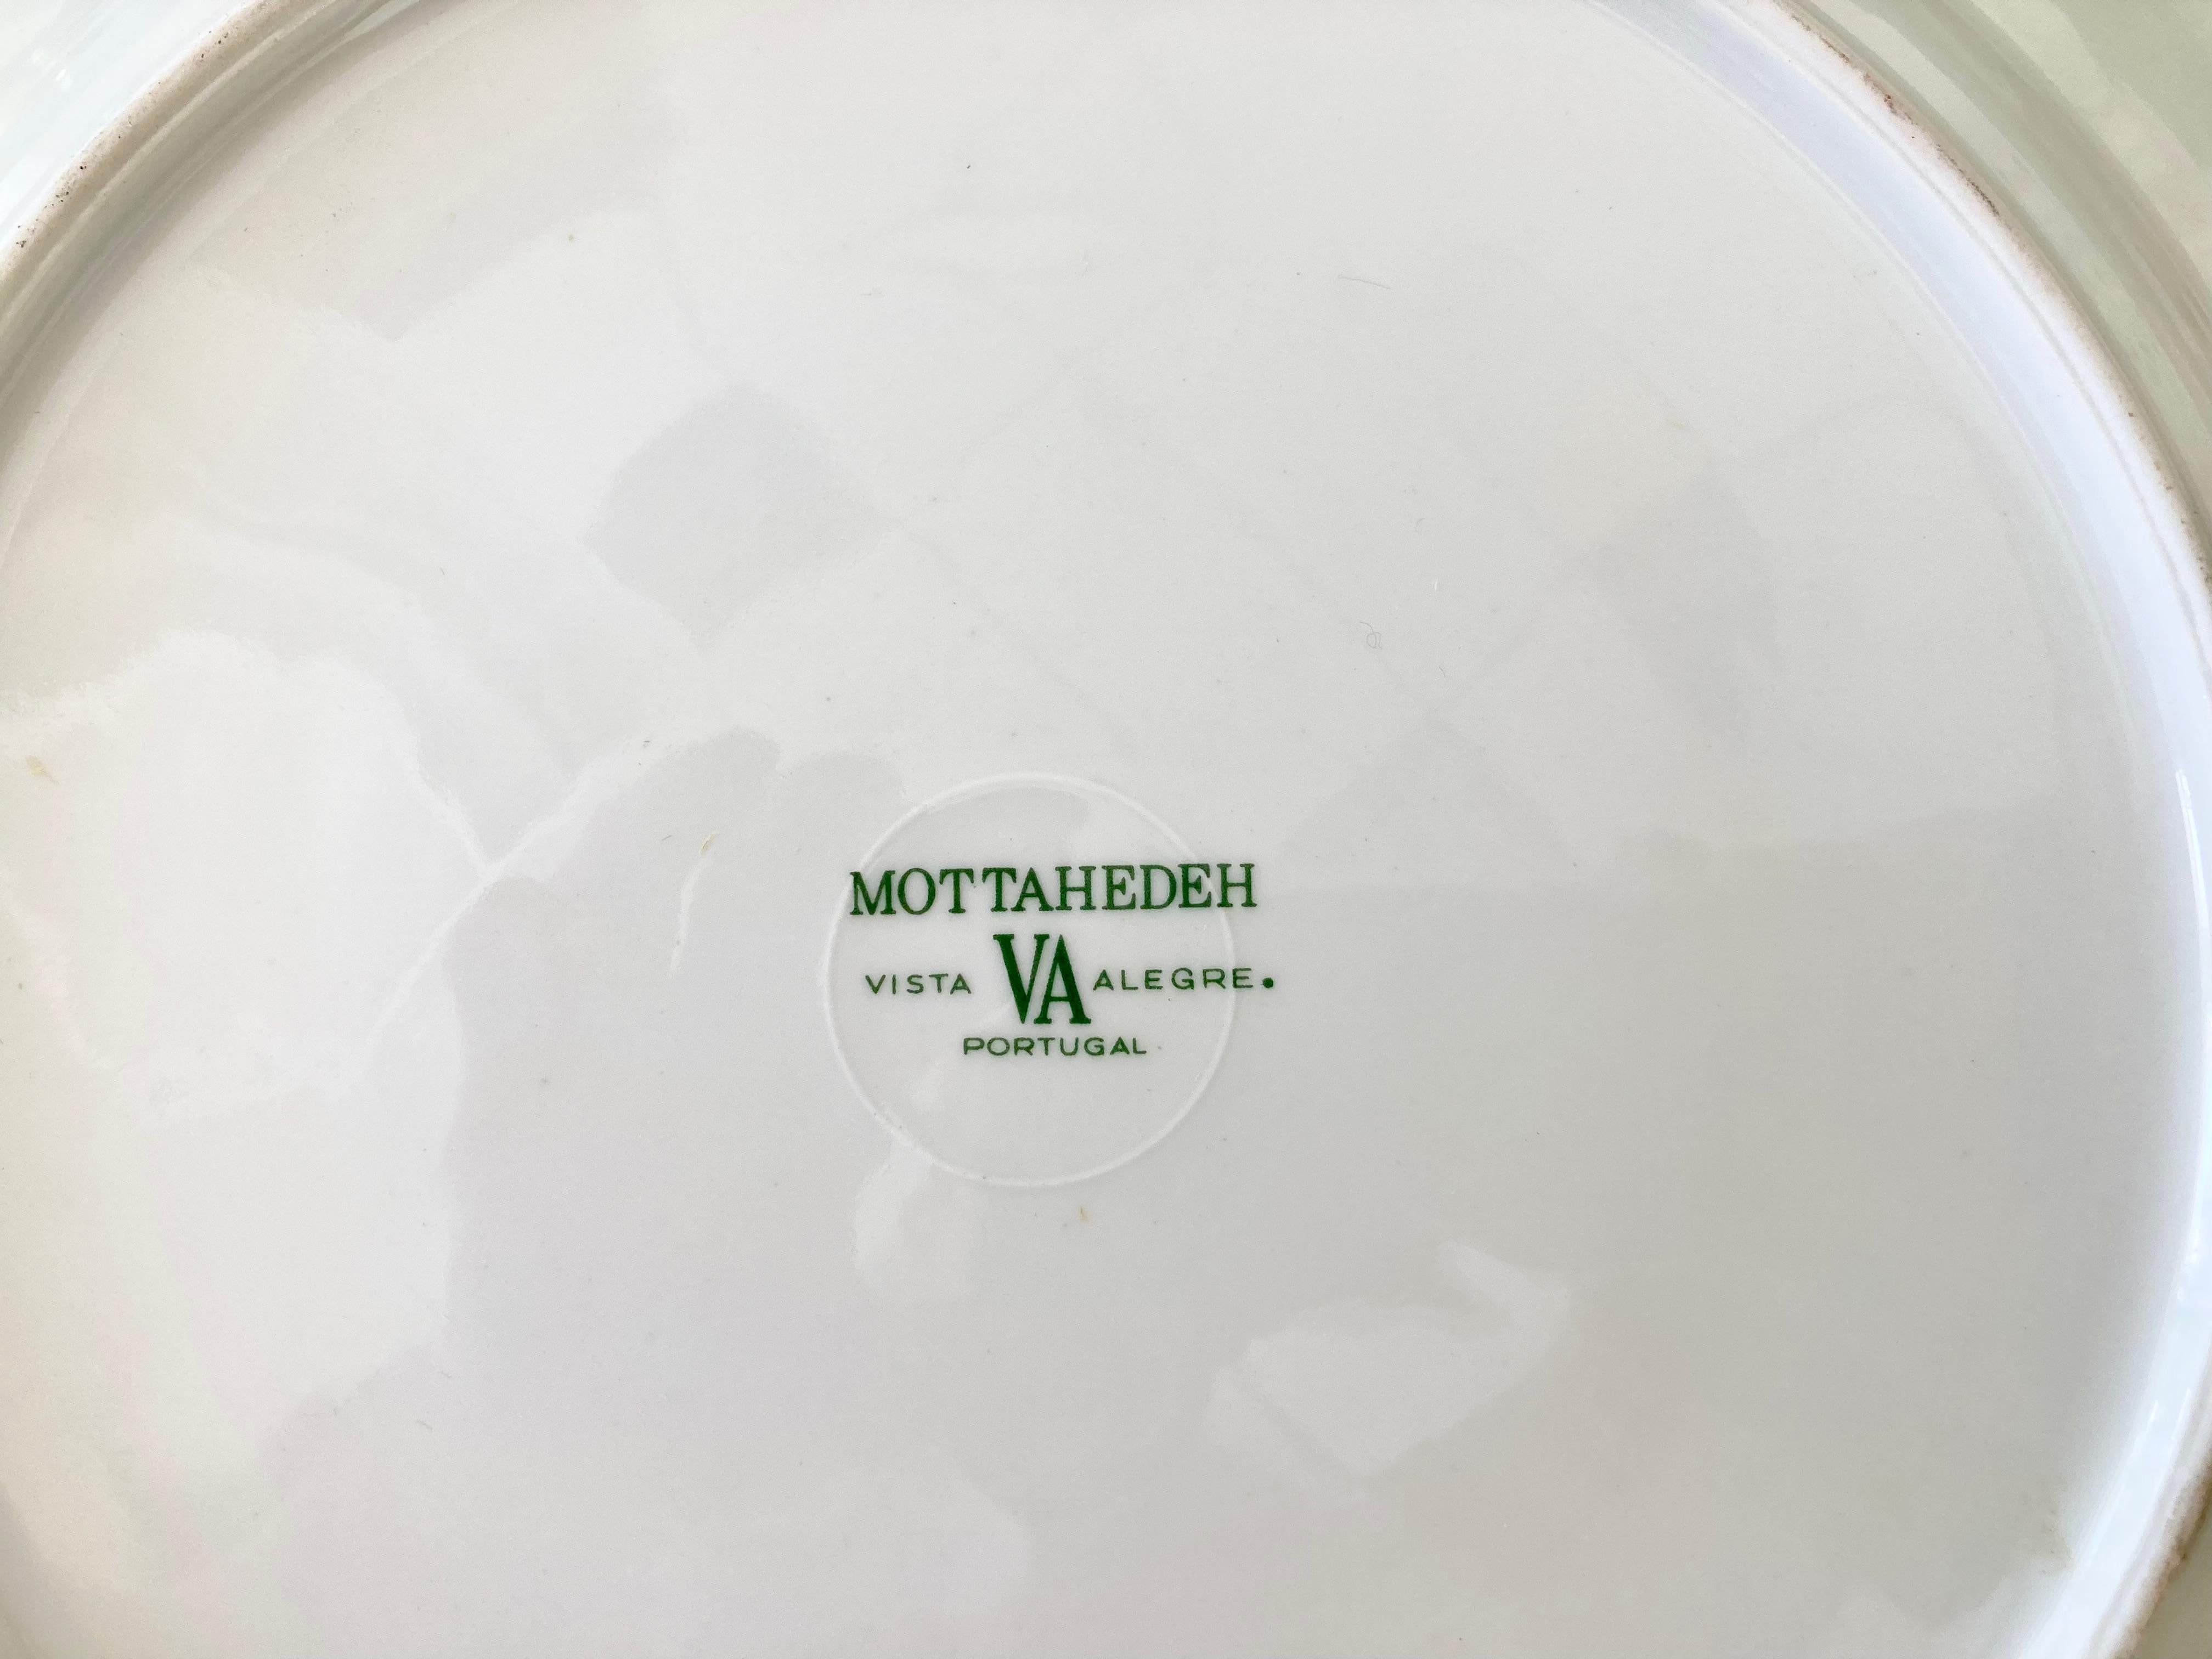 Ceramic Mottahedeh Tobacco Leaf Dinner Plates, Set of 6